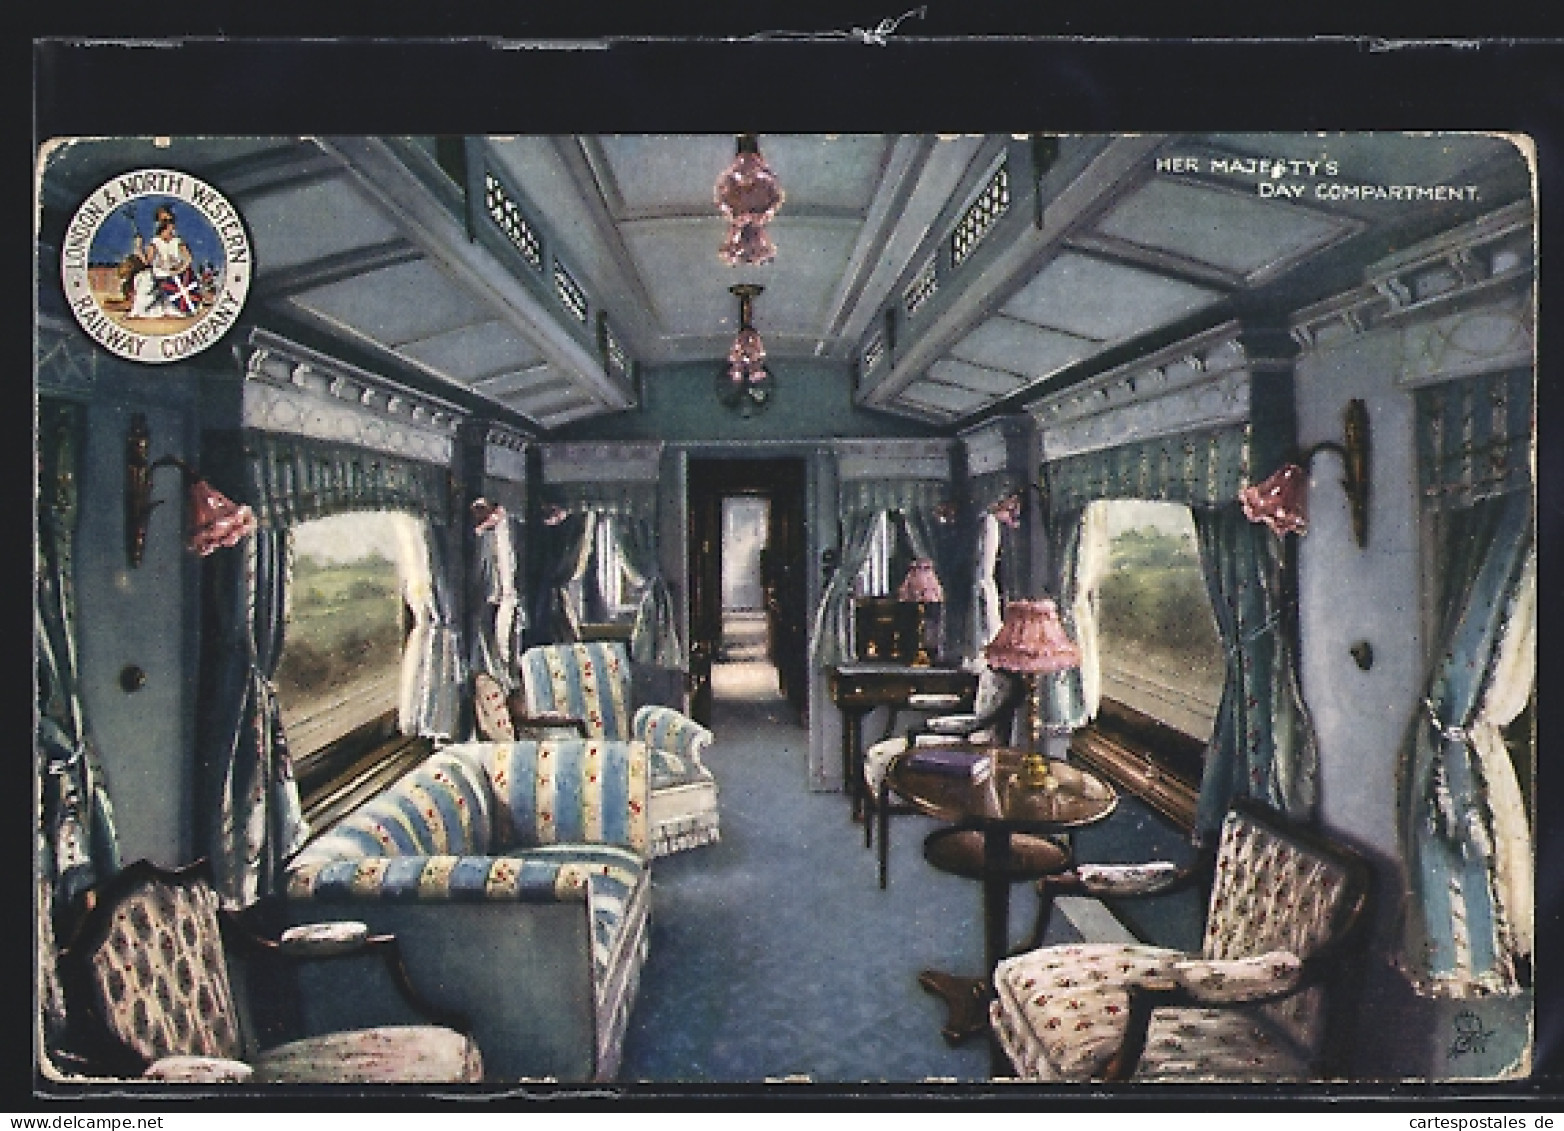 Pc London & North Western Railway Company, Her Majesty`s Day Compartment, Englische Eisenbahn  - Eisenbahnen